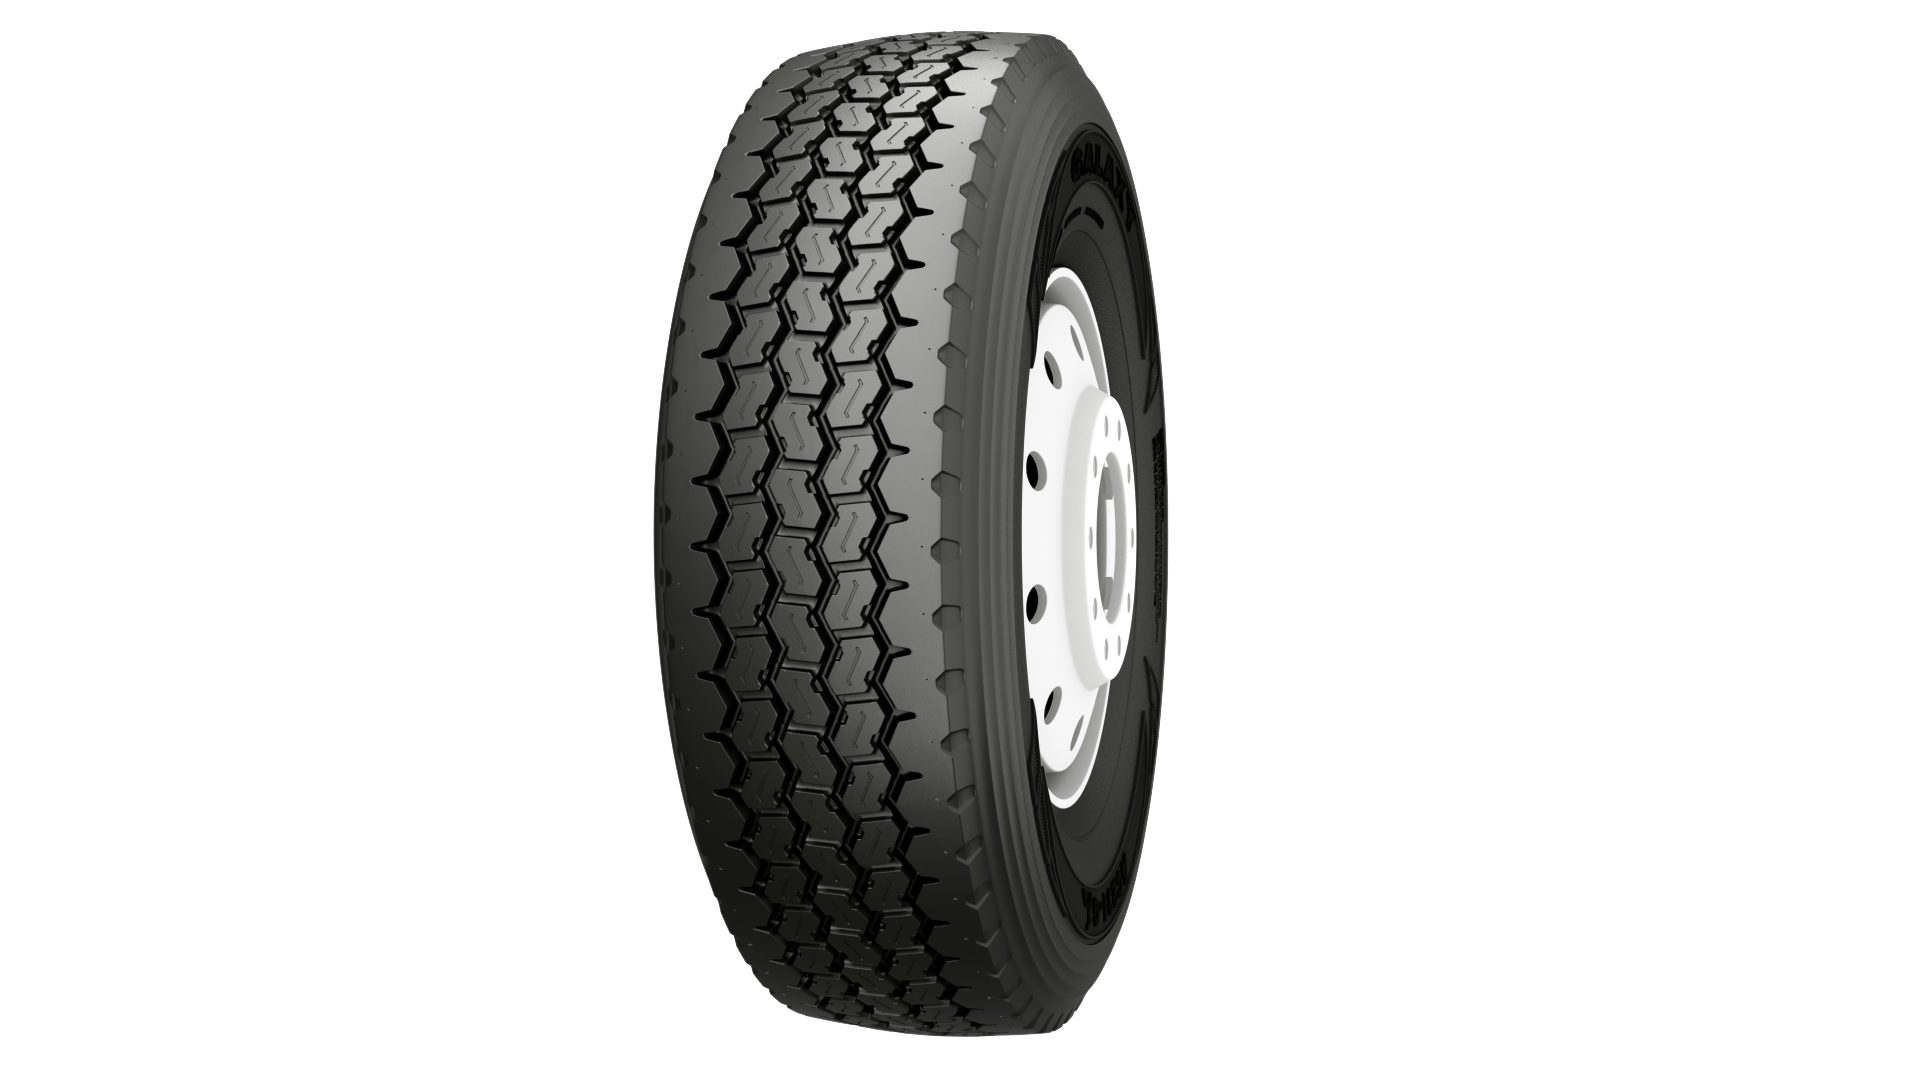 Galaxy ac231-g tire